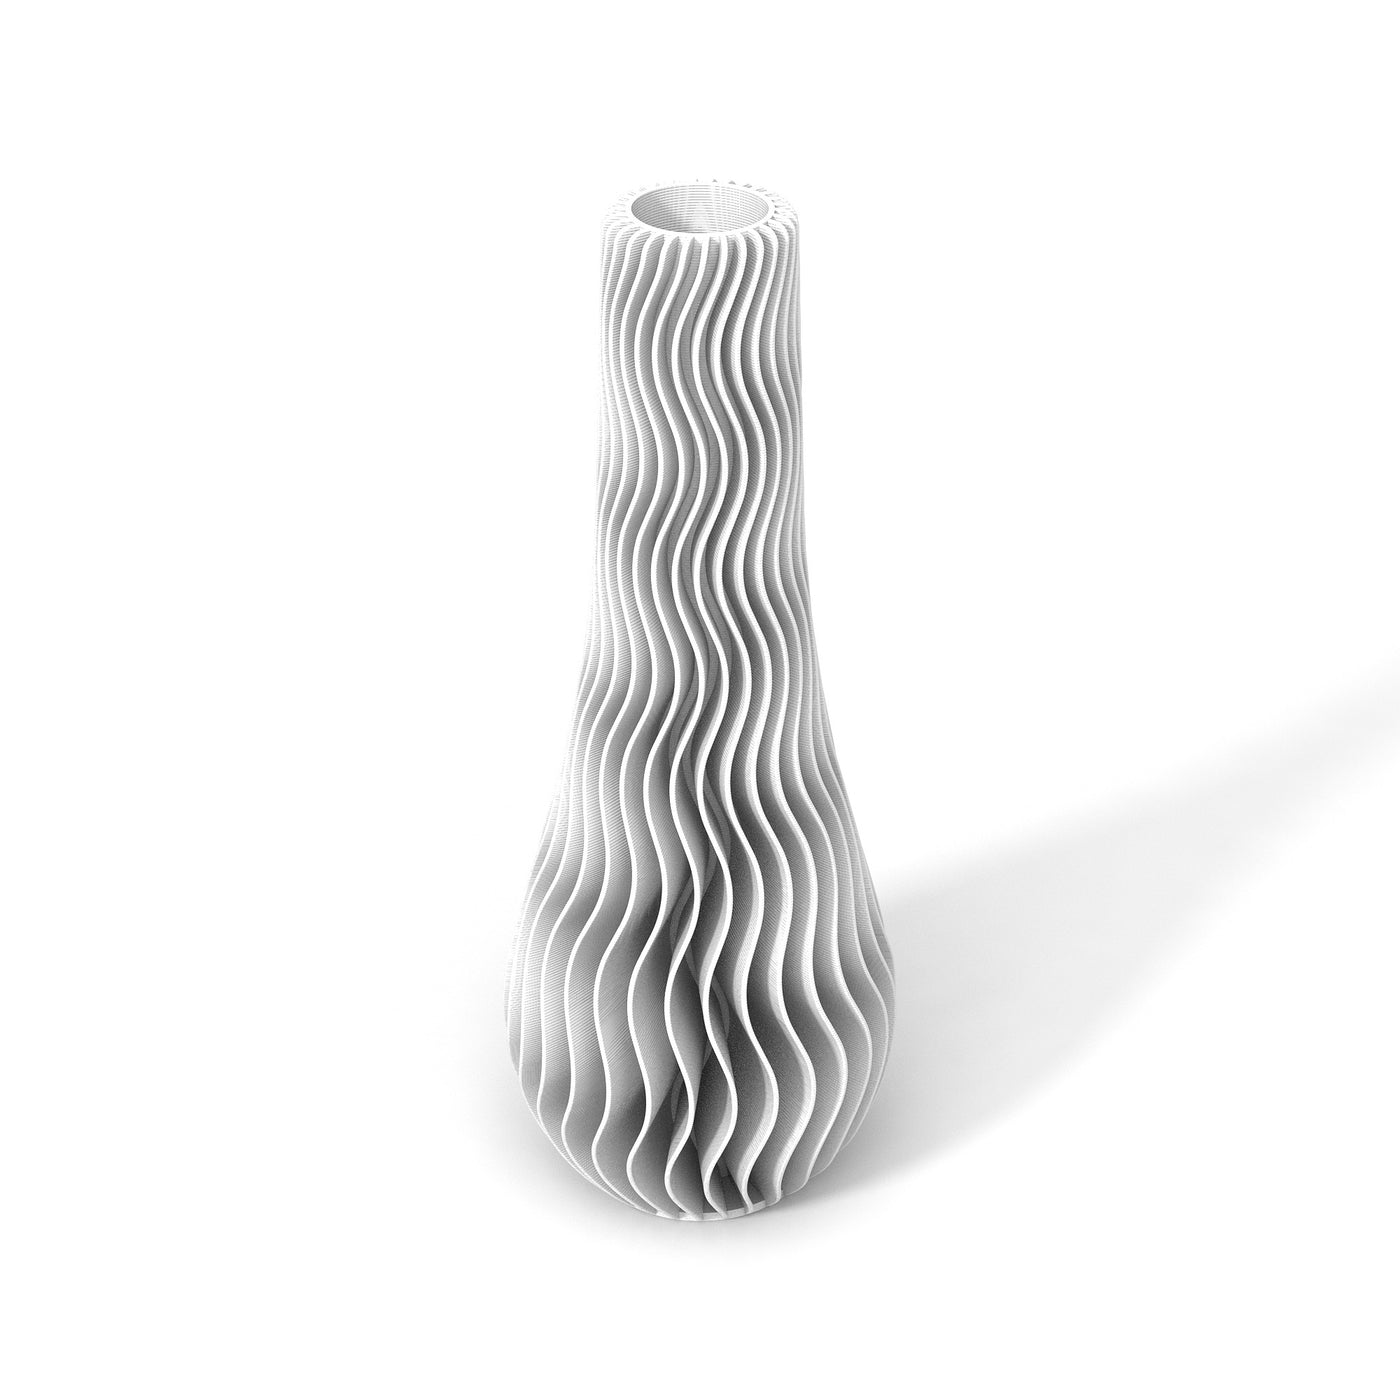 Bílá designová váza 3D print WAVE 2